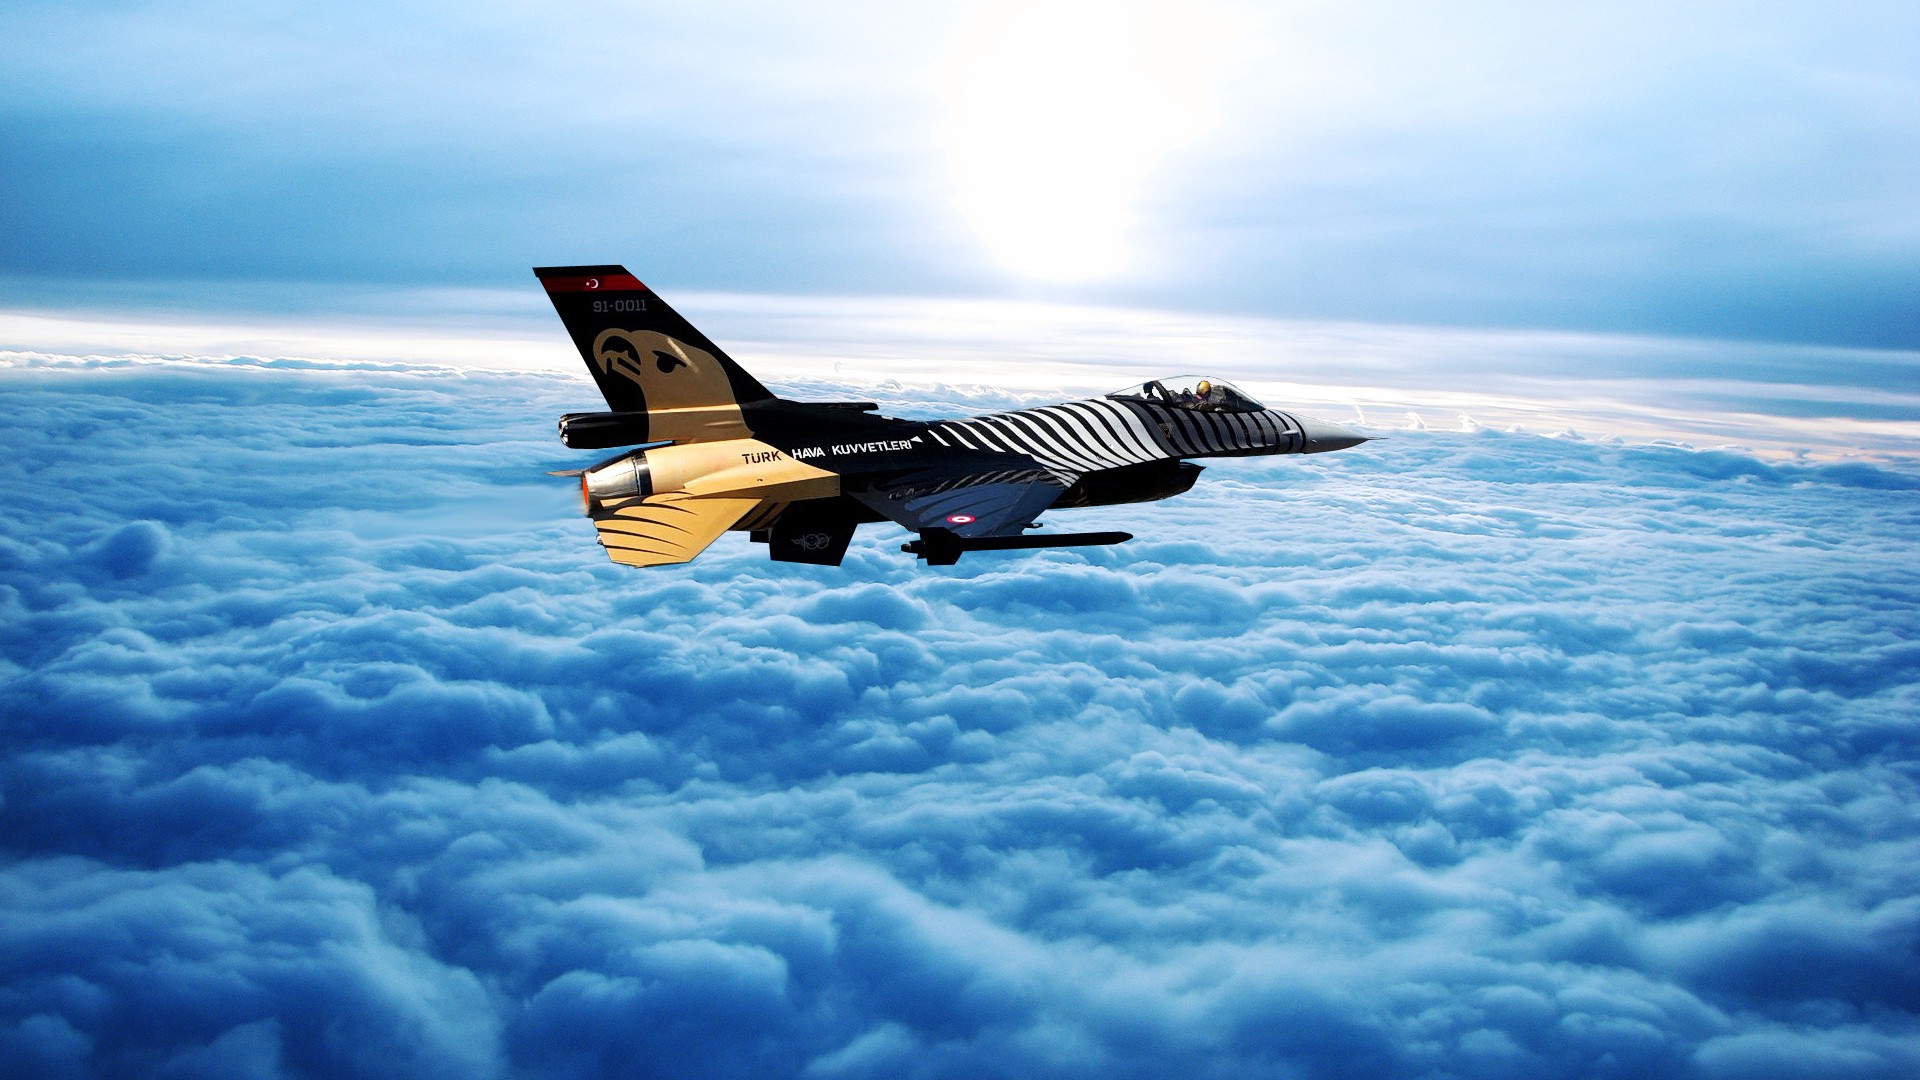 Atak, Turkish Air Force, sky, cloud wallpaper  aircraft 